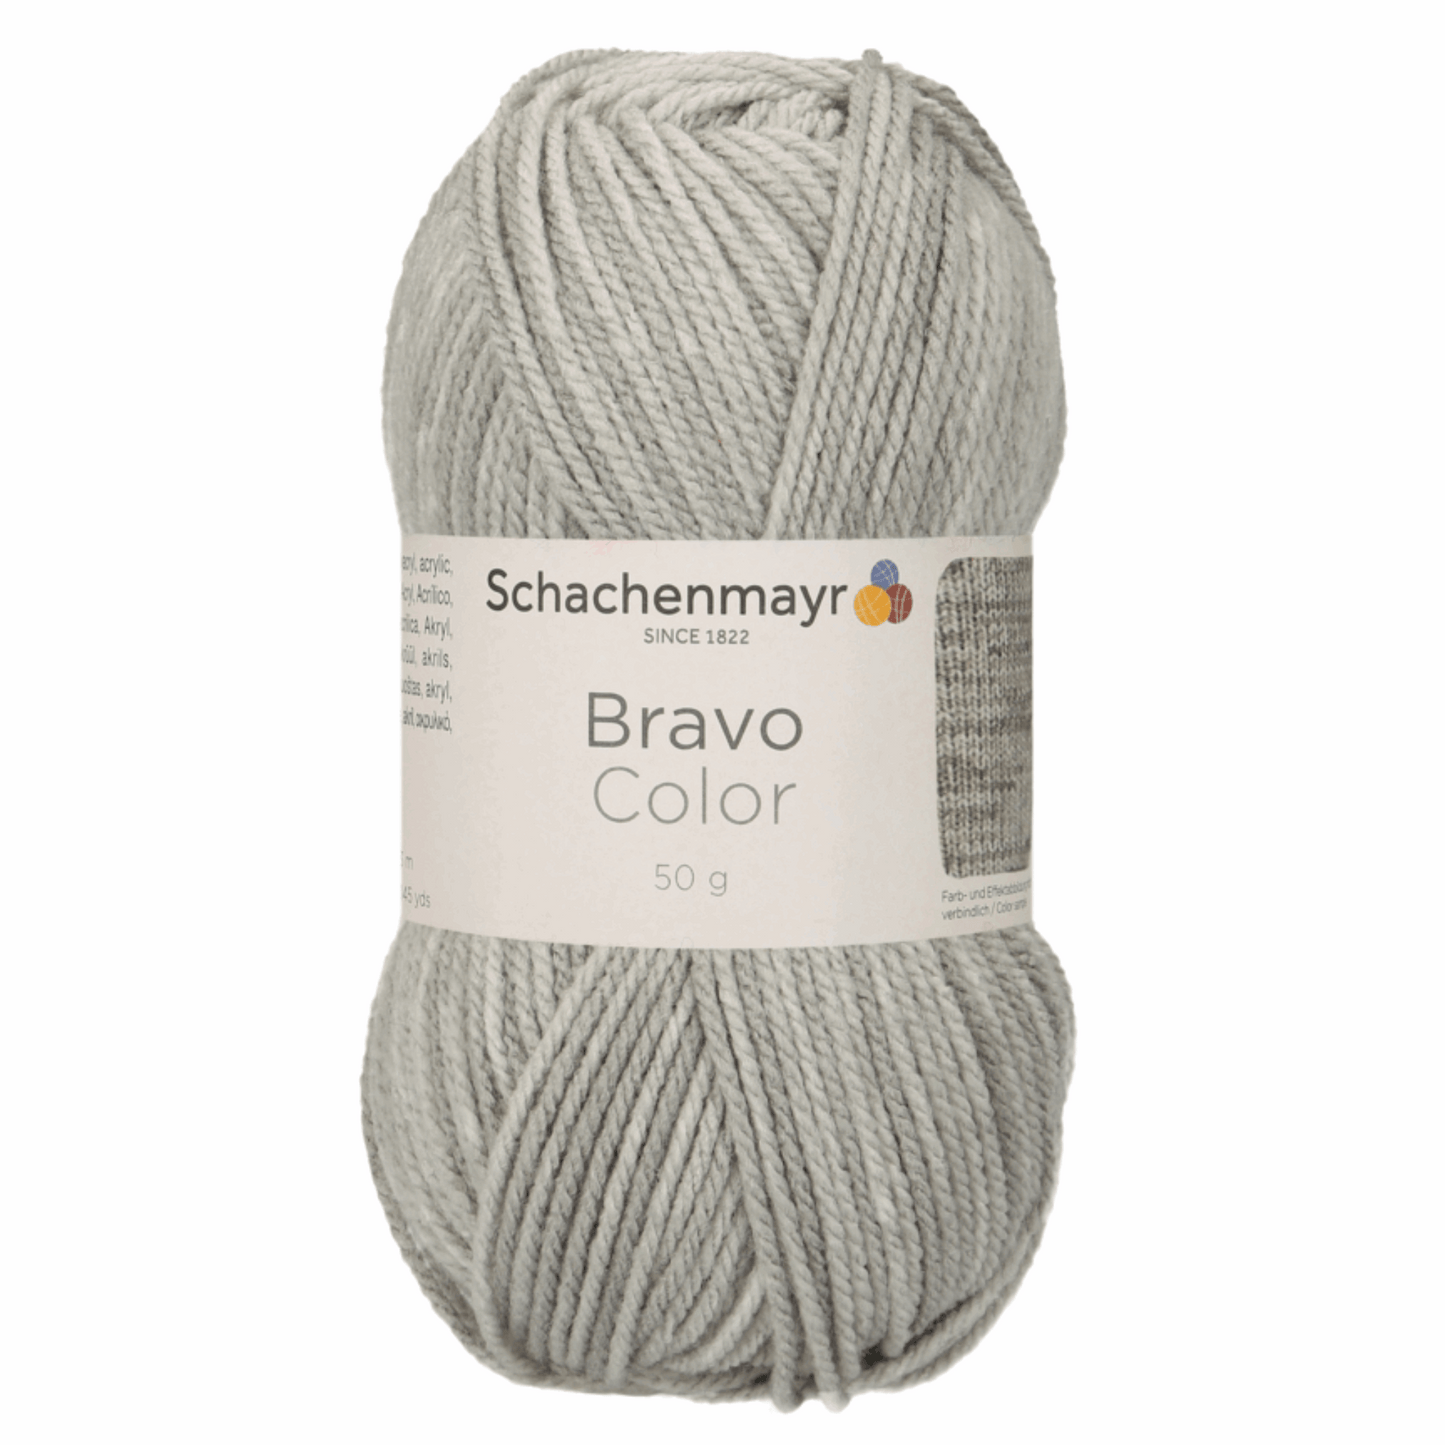 Schachenmayr Bravo50g, 90421, Farbe Hellgrau Denim 2110